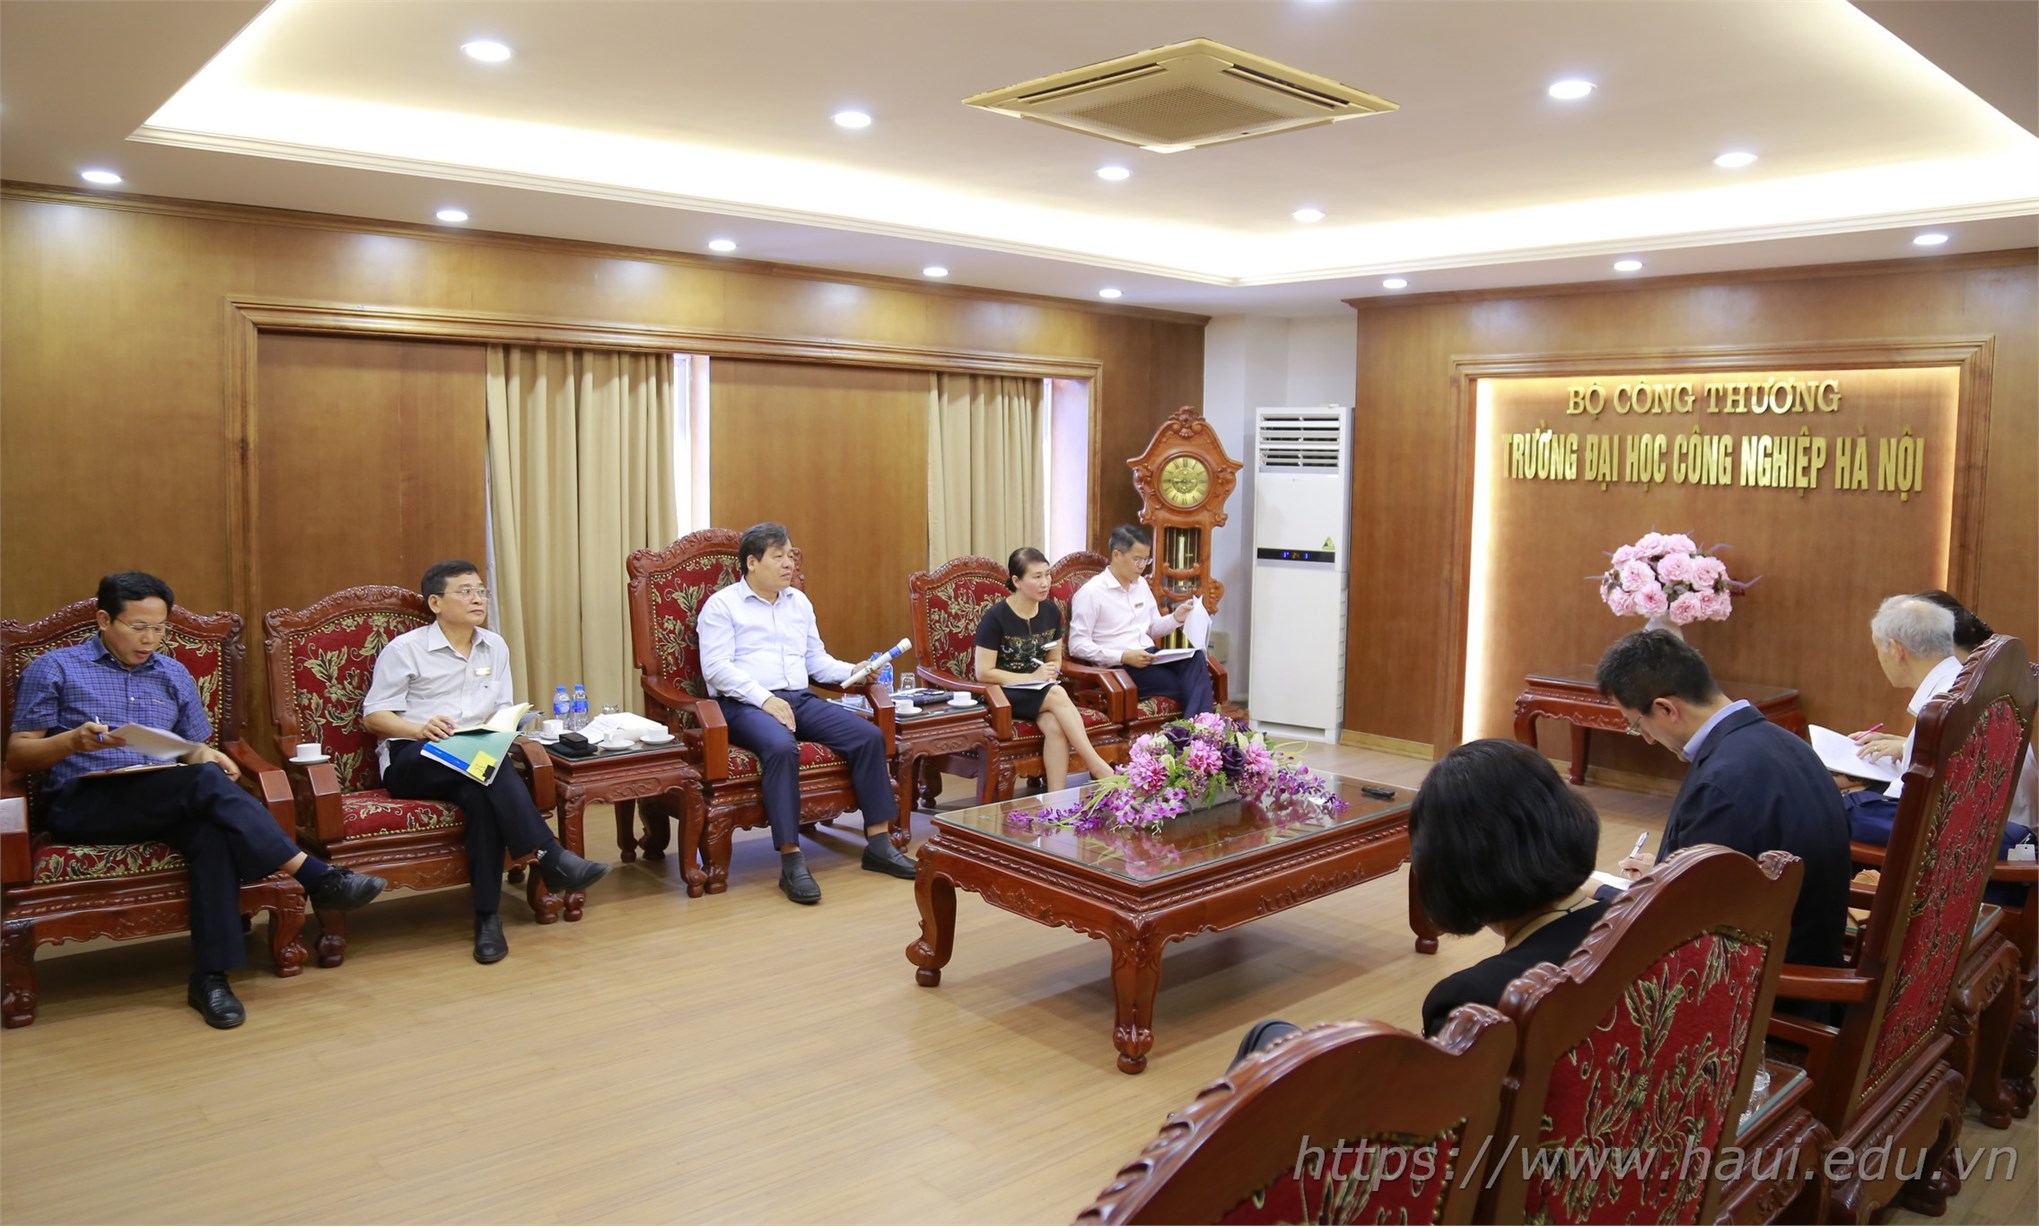 Đoàn chuyên gia JICA làm việc tại Đại học Công nghiệp Hà Nội